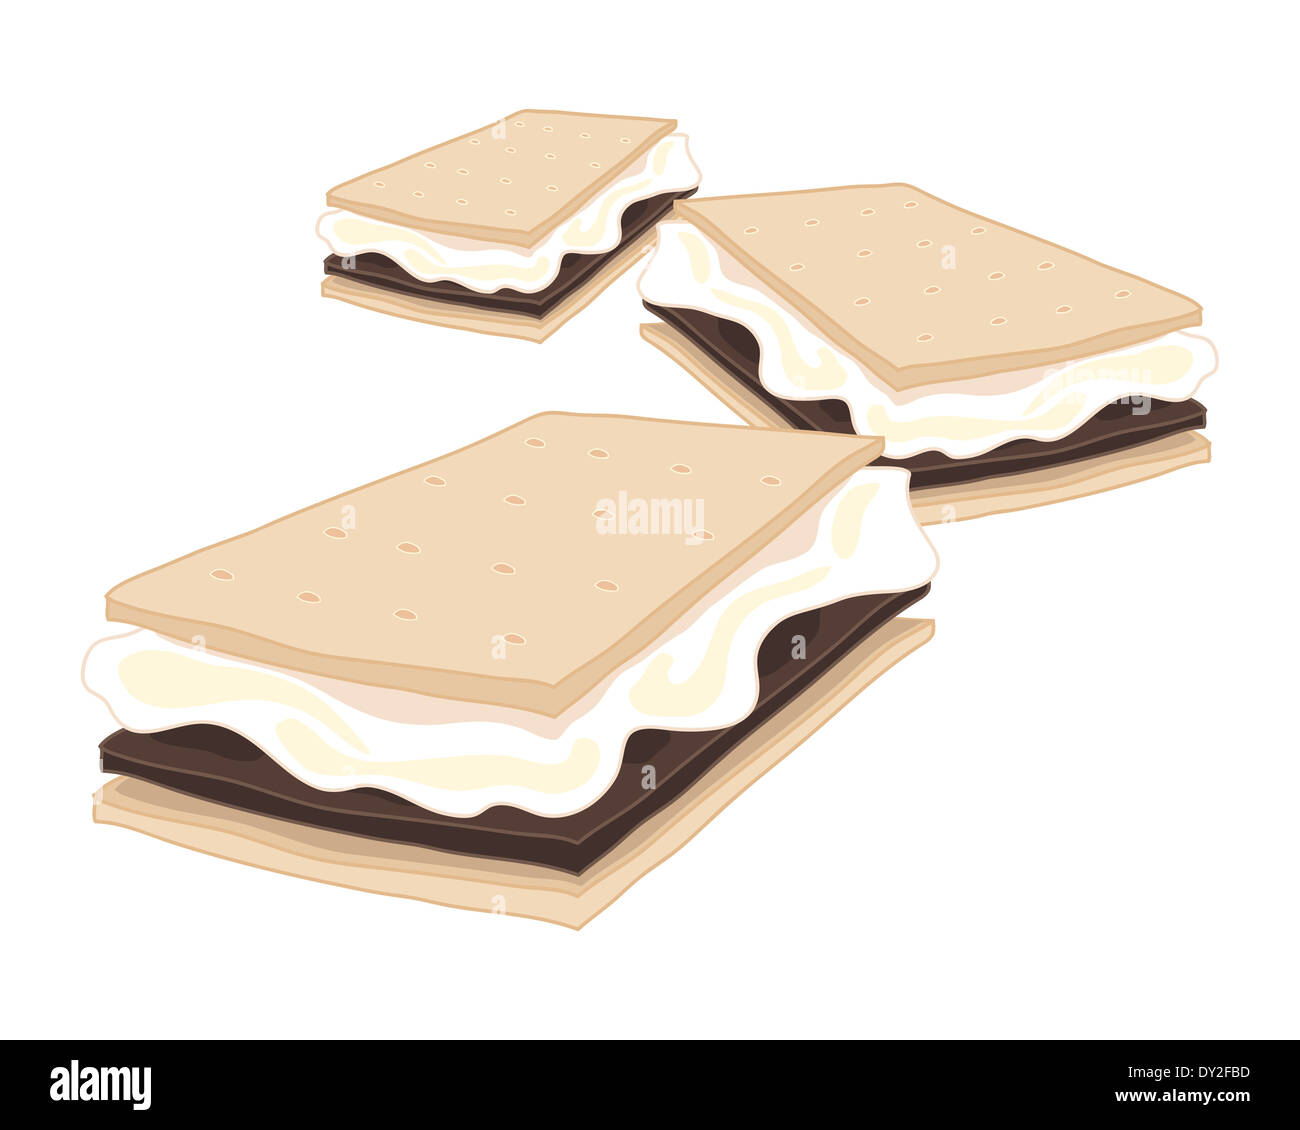 Una illustrazione di deliziose American s'more biscotto croccante con marshmallow e cioccolato isolato su uno sfondo bianco Foto Stock